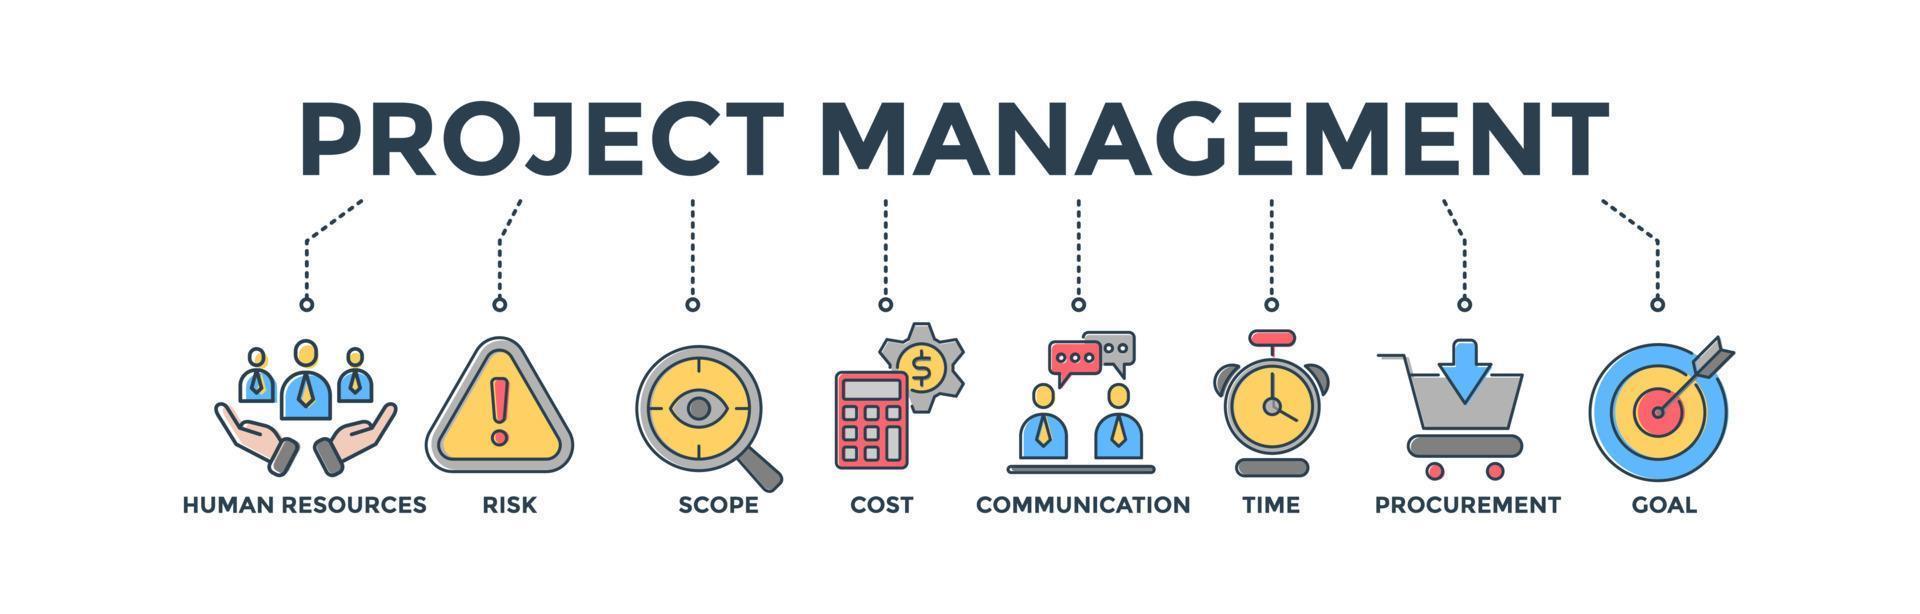 Projektmanagement-Banner-Websymbol-Vektorillustration für Unternehmensberatung und Teamarbeit mit den Symbolen für Humanressourcen, Risiko, Umfang, Kosten, Kommunikation, Zeit, Beschaffung und Ziel vektor